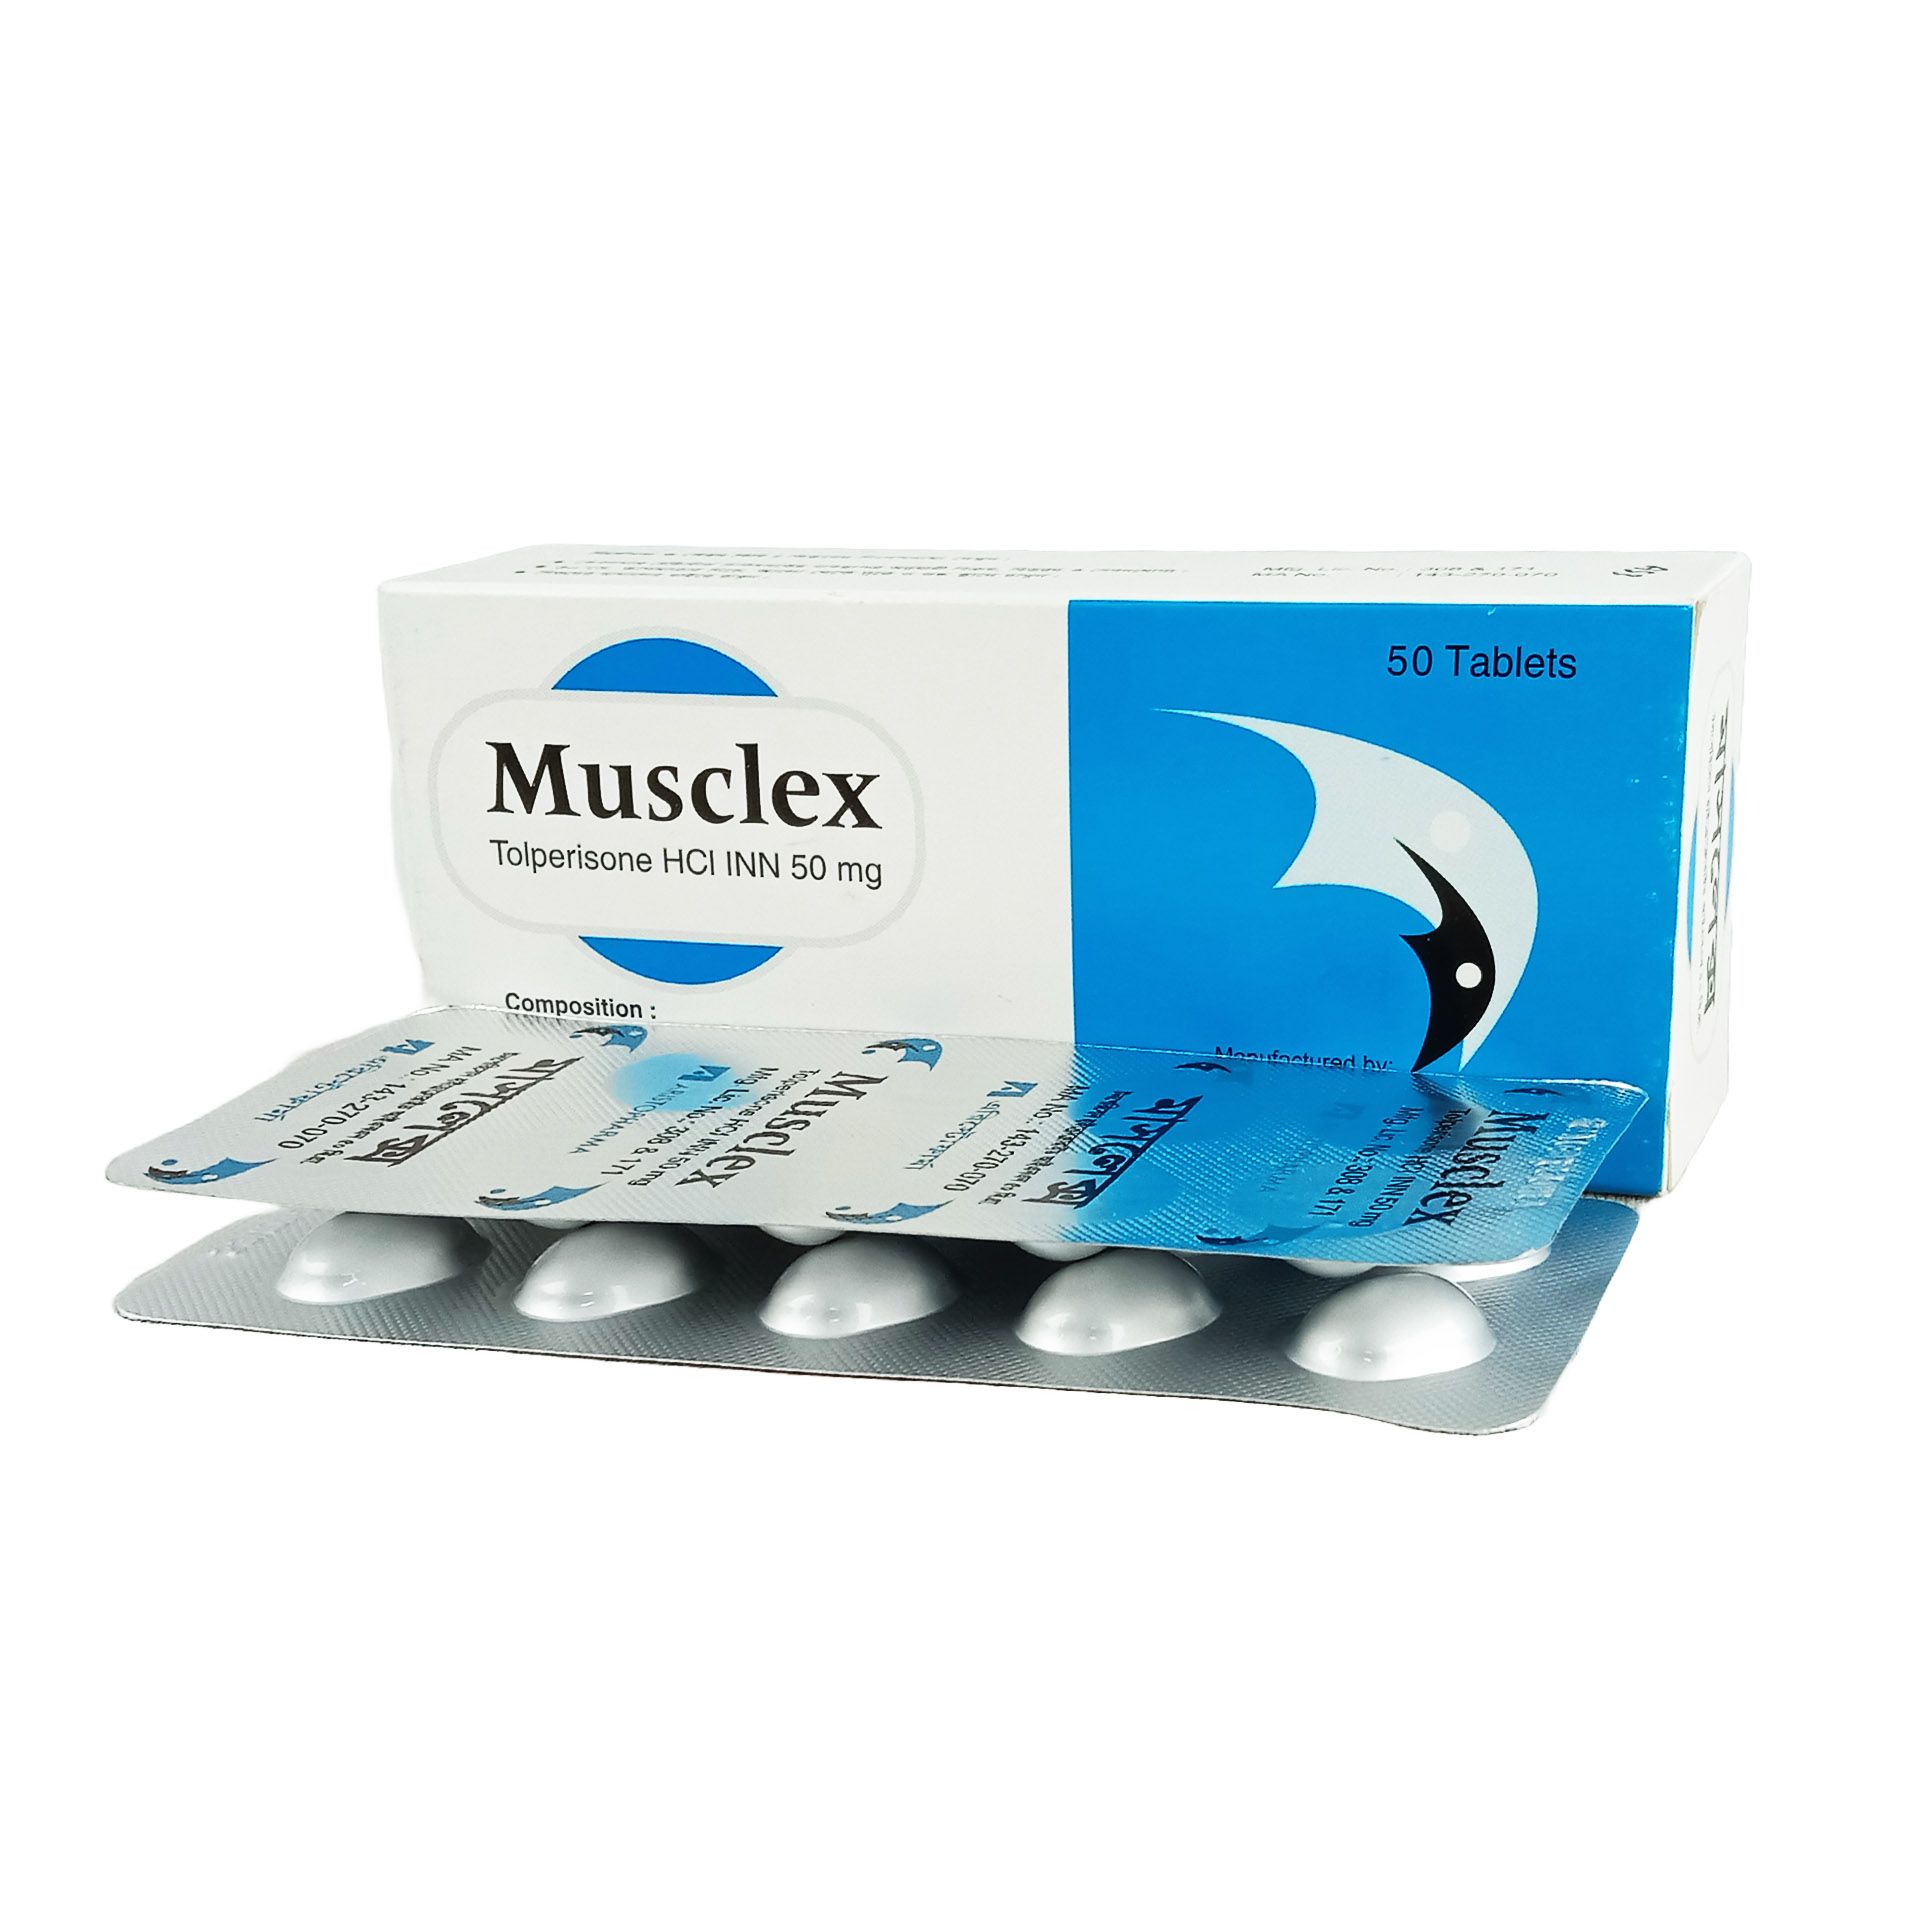 Musclex 50mg Tablet